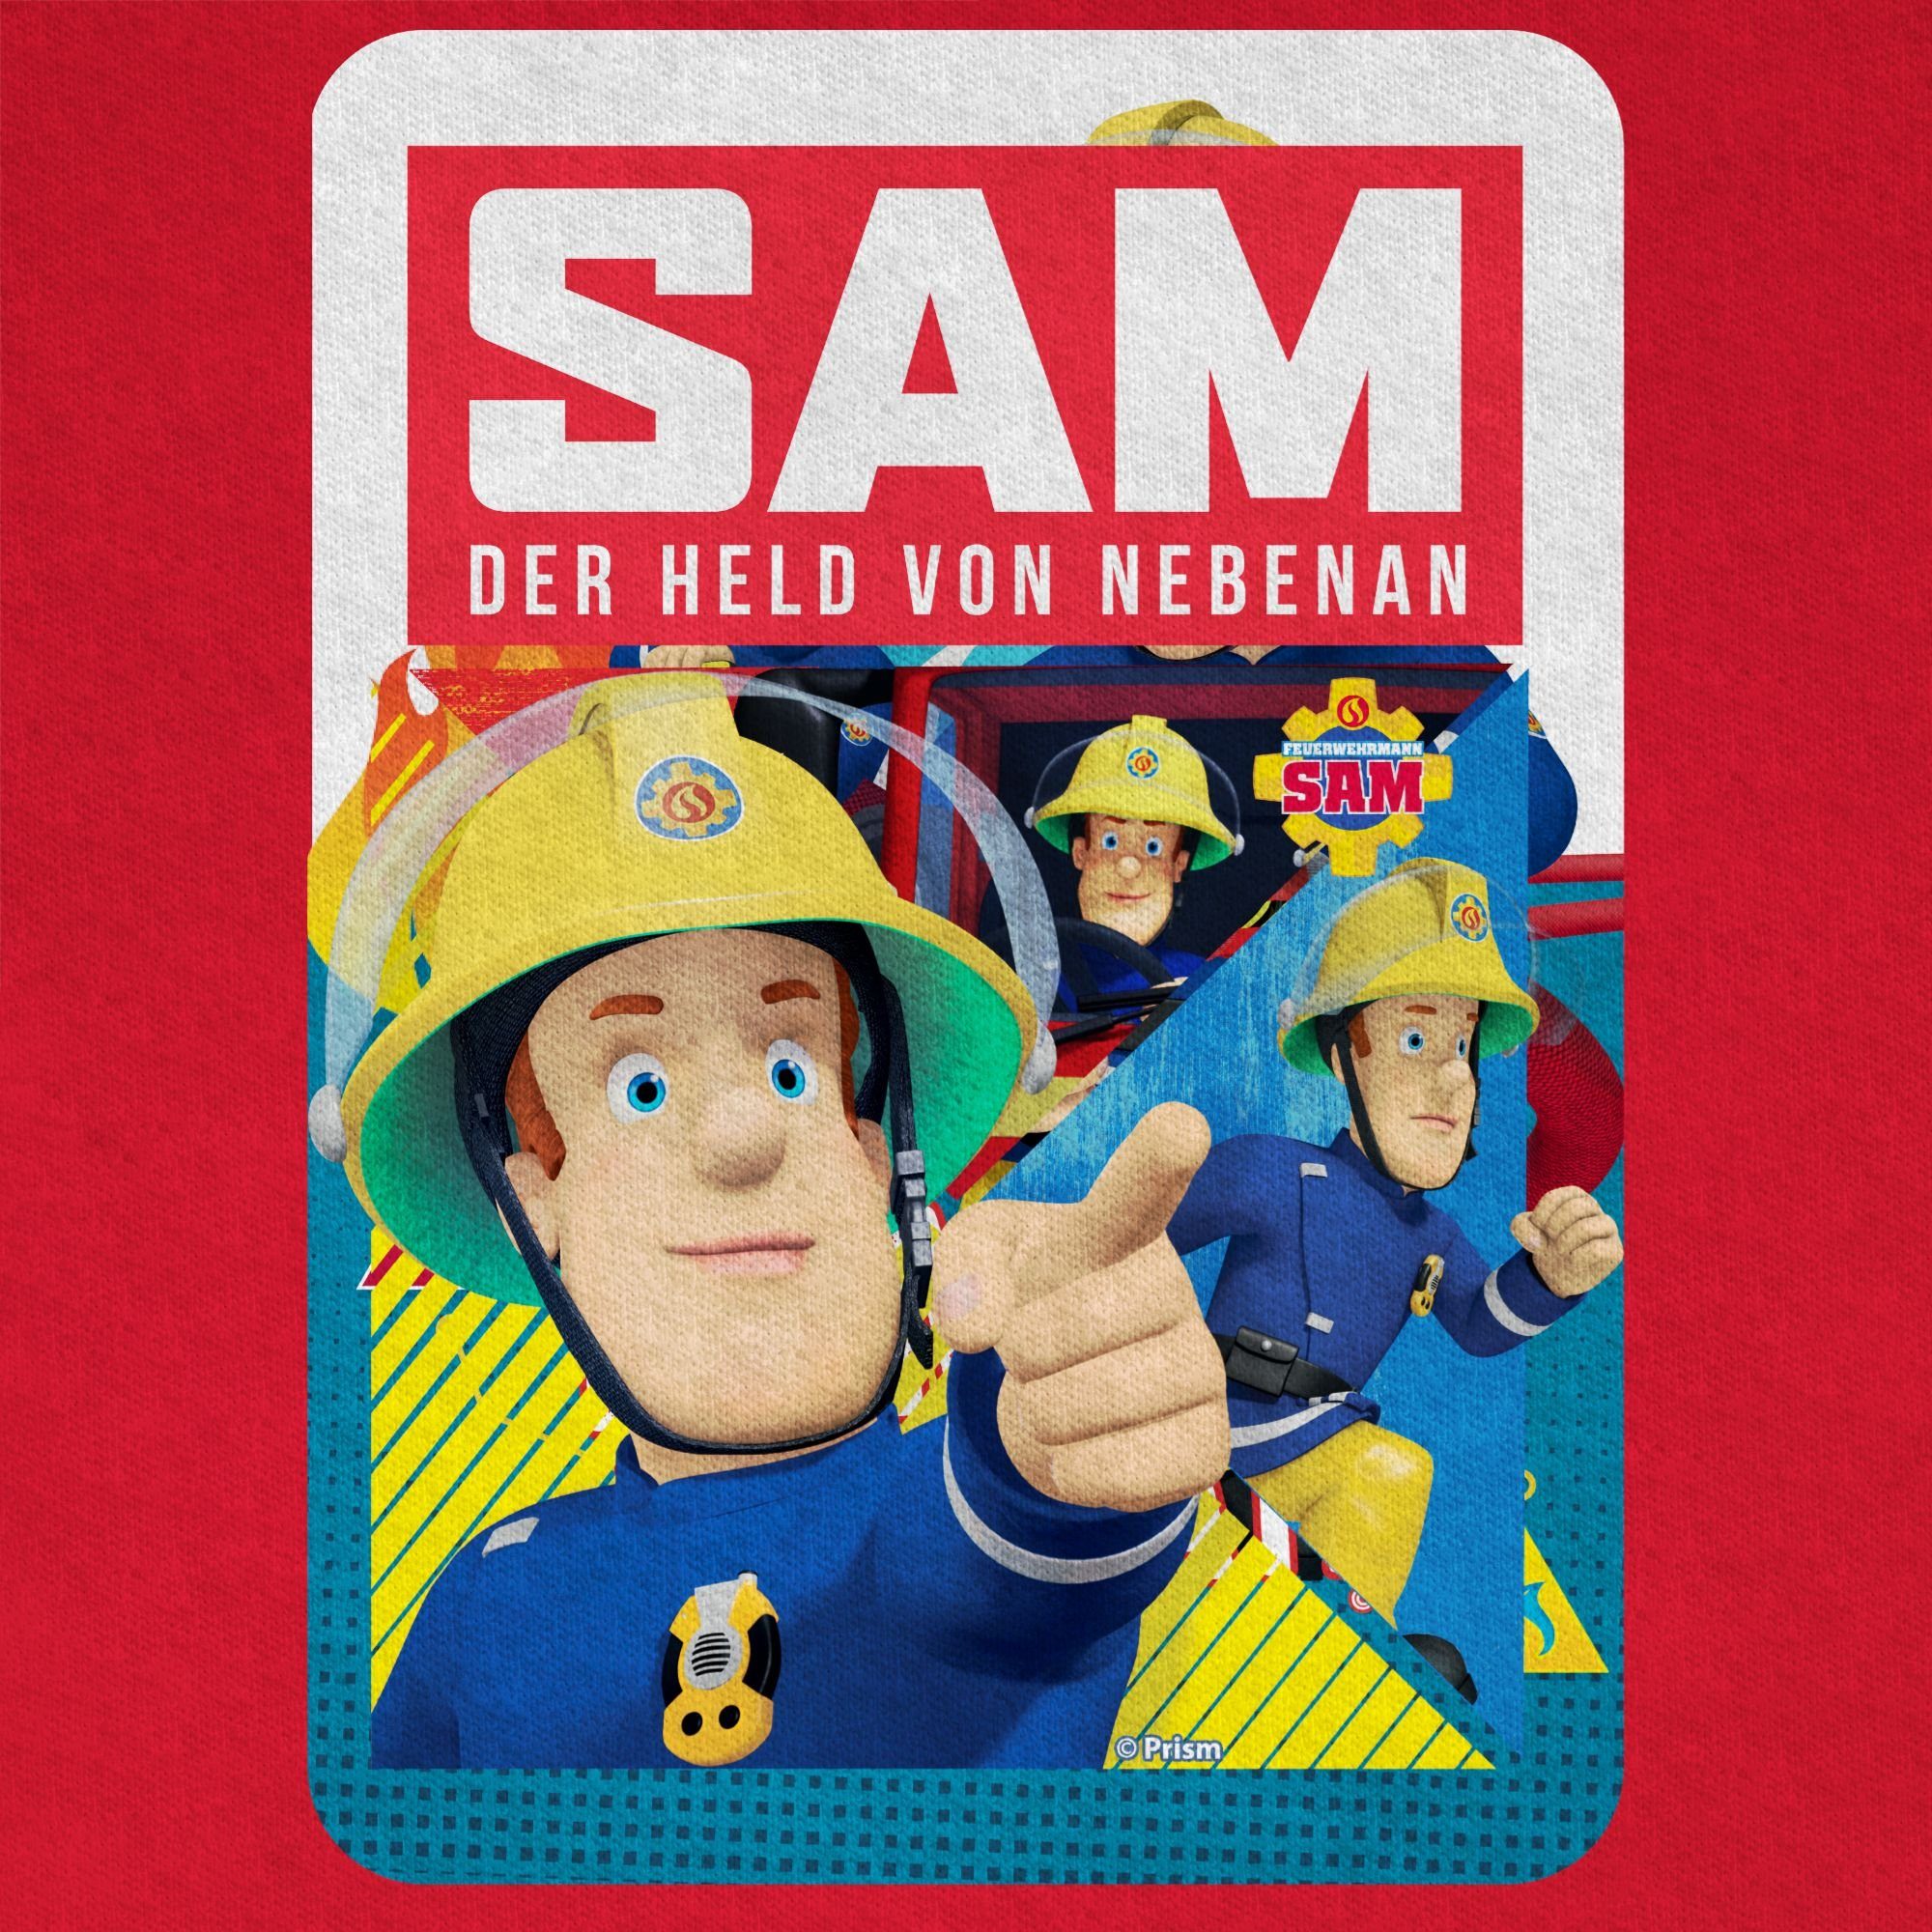 Shirtracer T-Shirt 01 Jungen Rot der von nebenan Held Feuerwehrmann Sam Sam